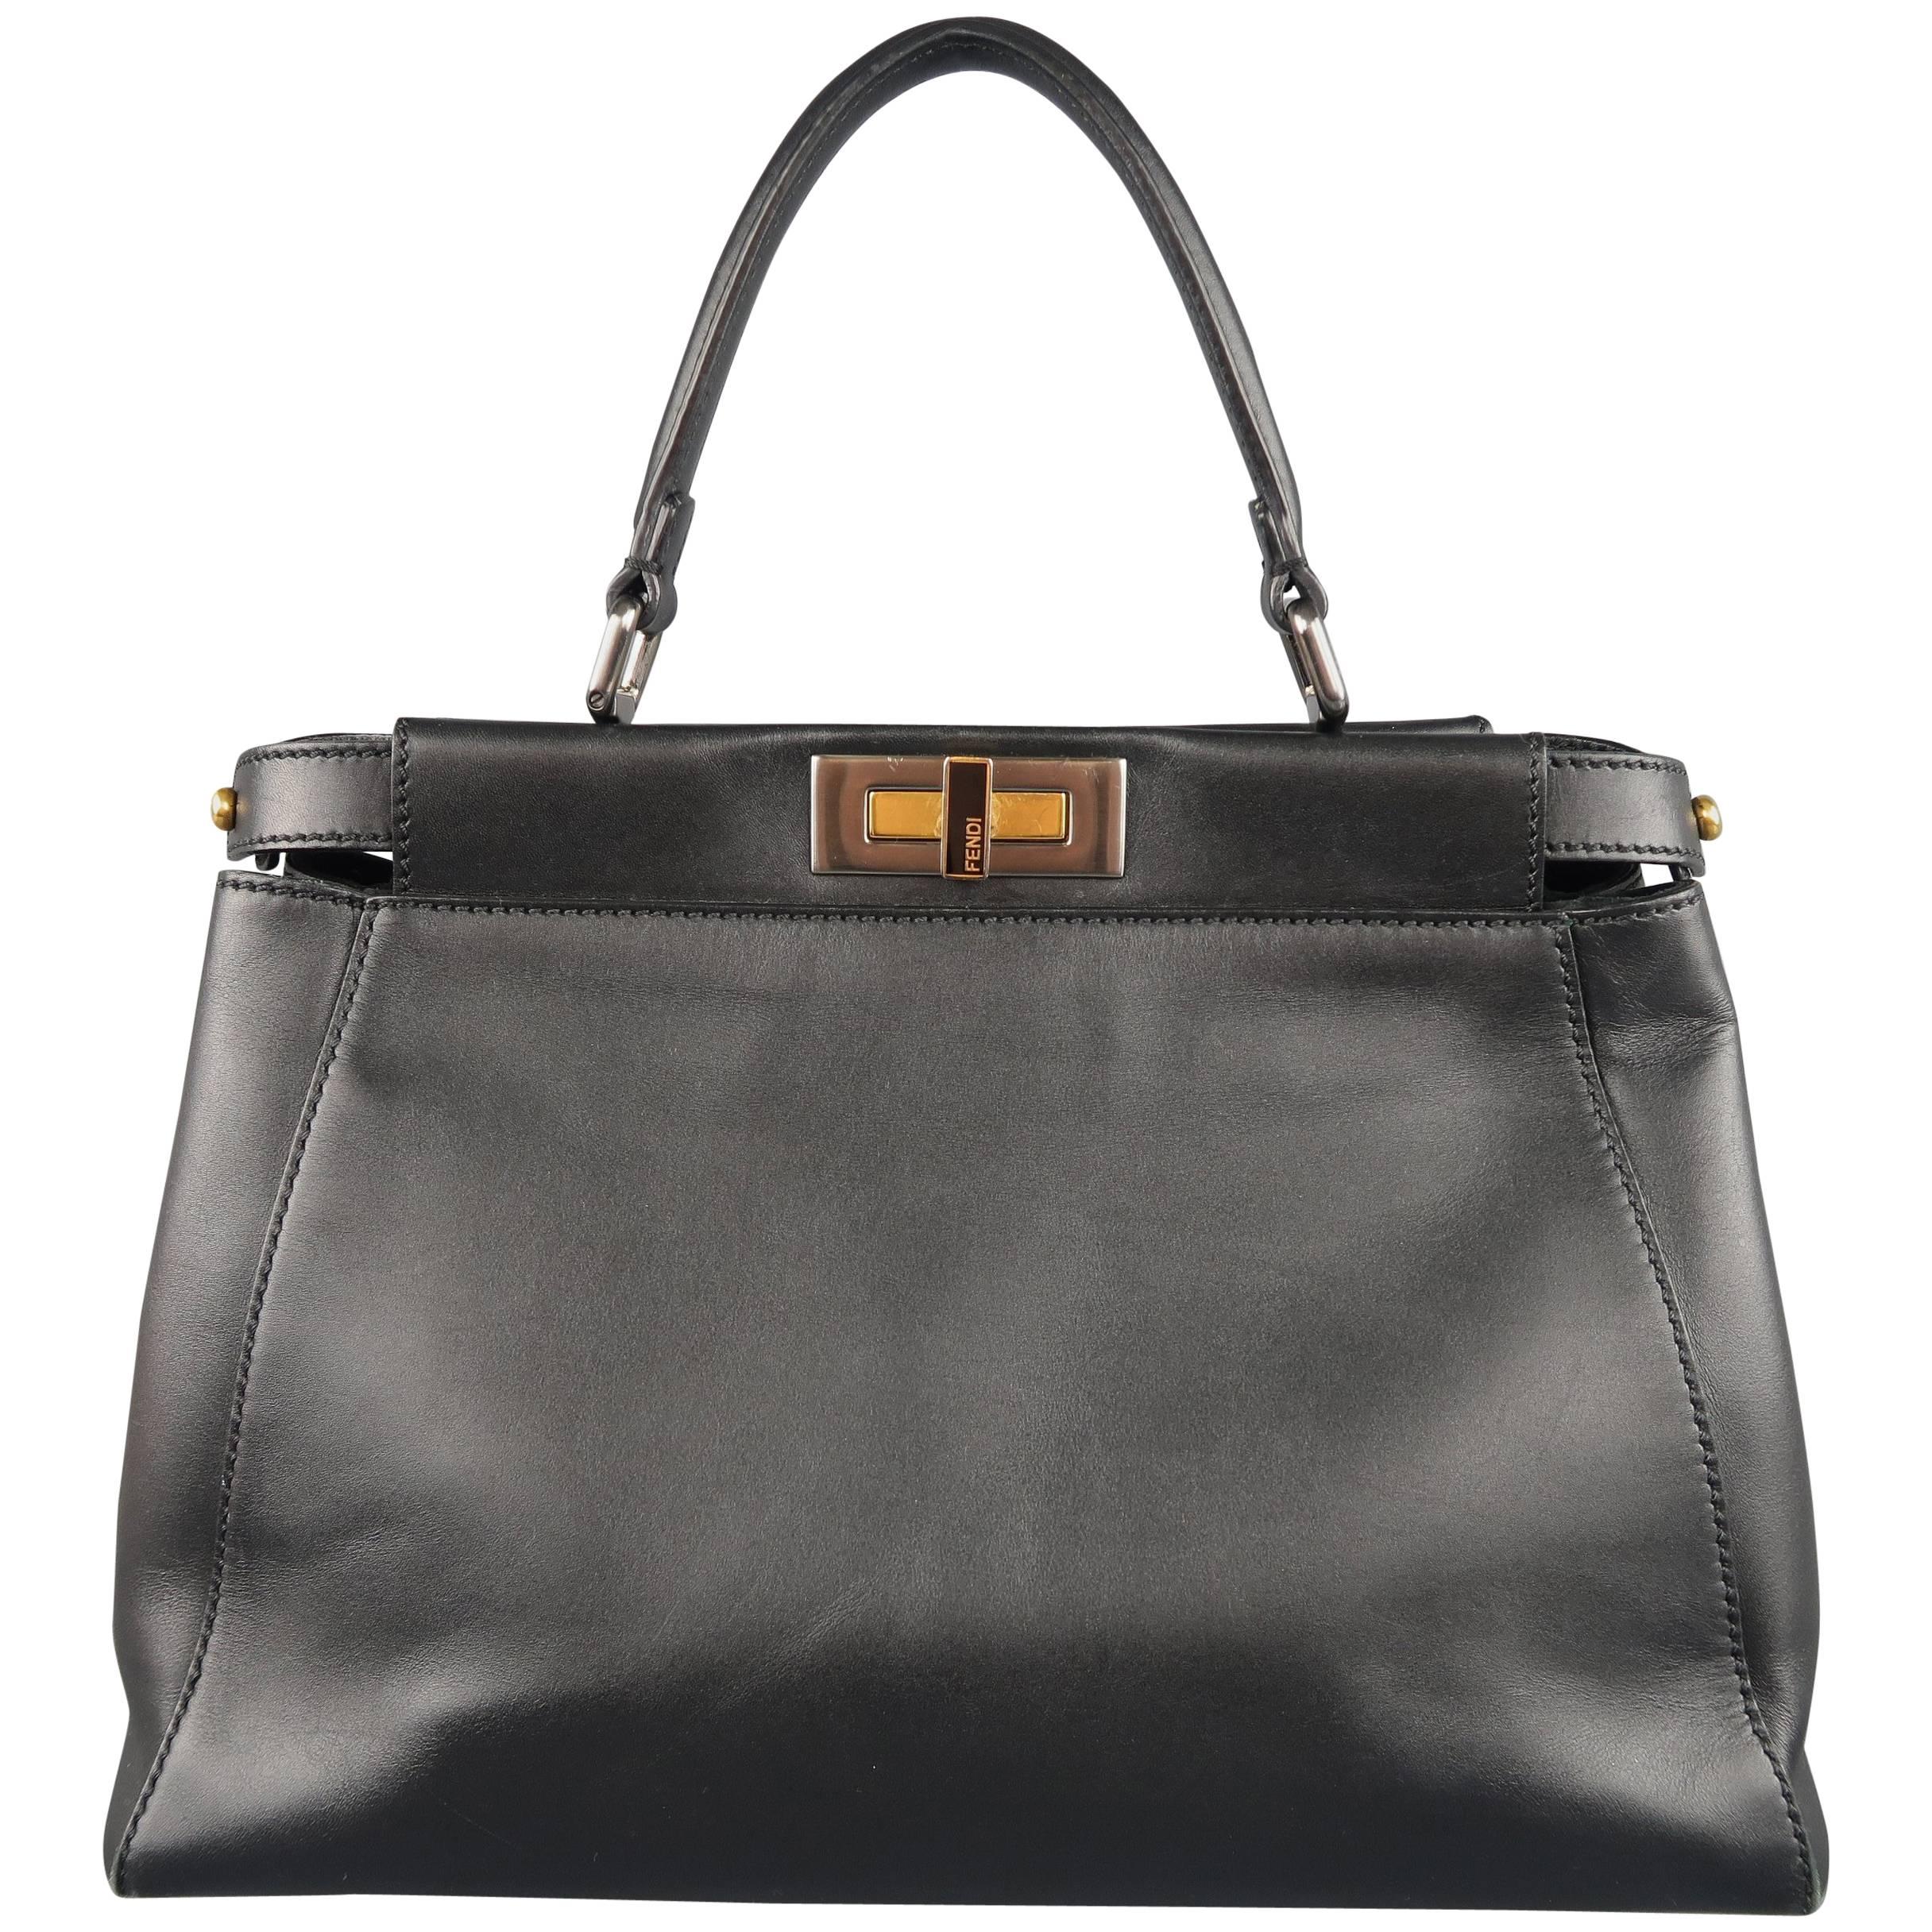 Fendi Black Leather Peekaboo Medium Handbag